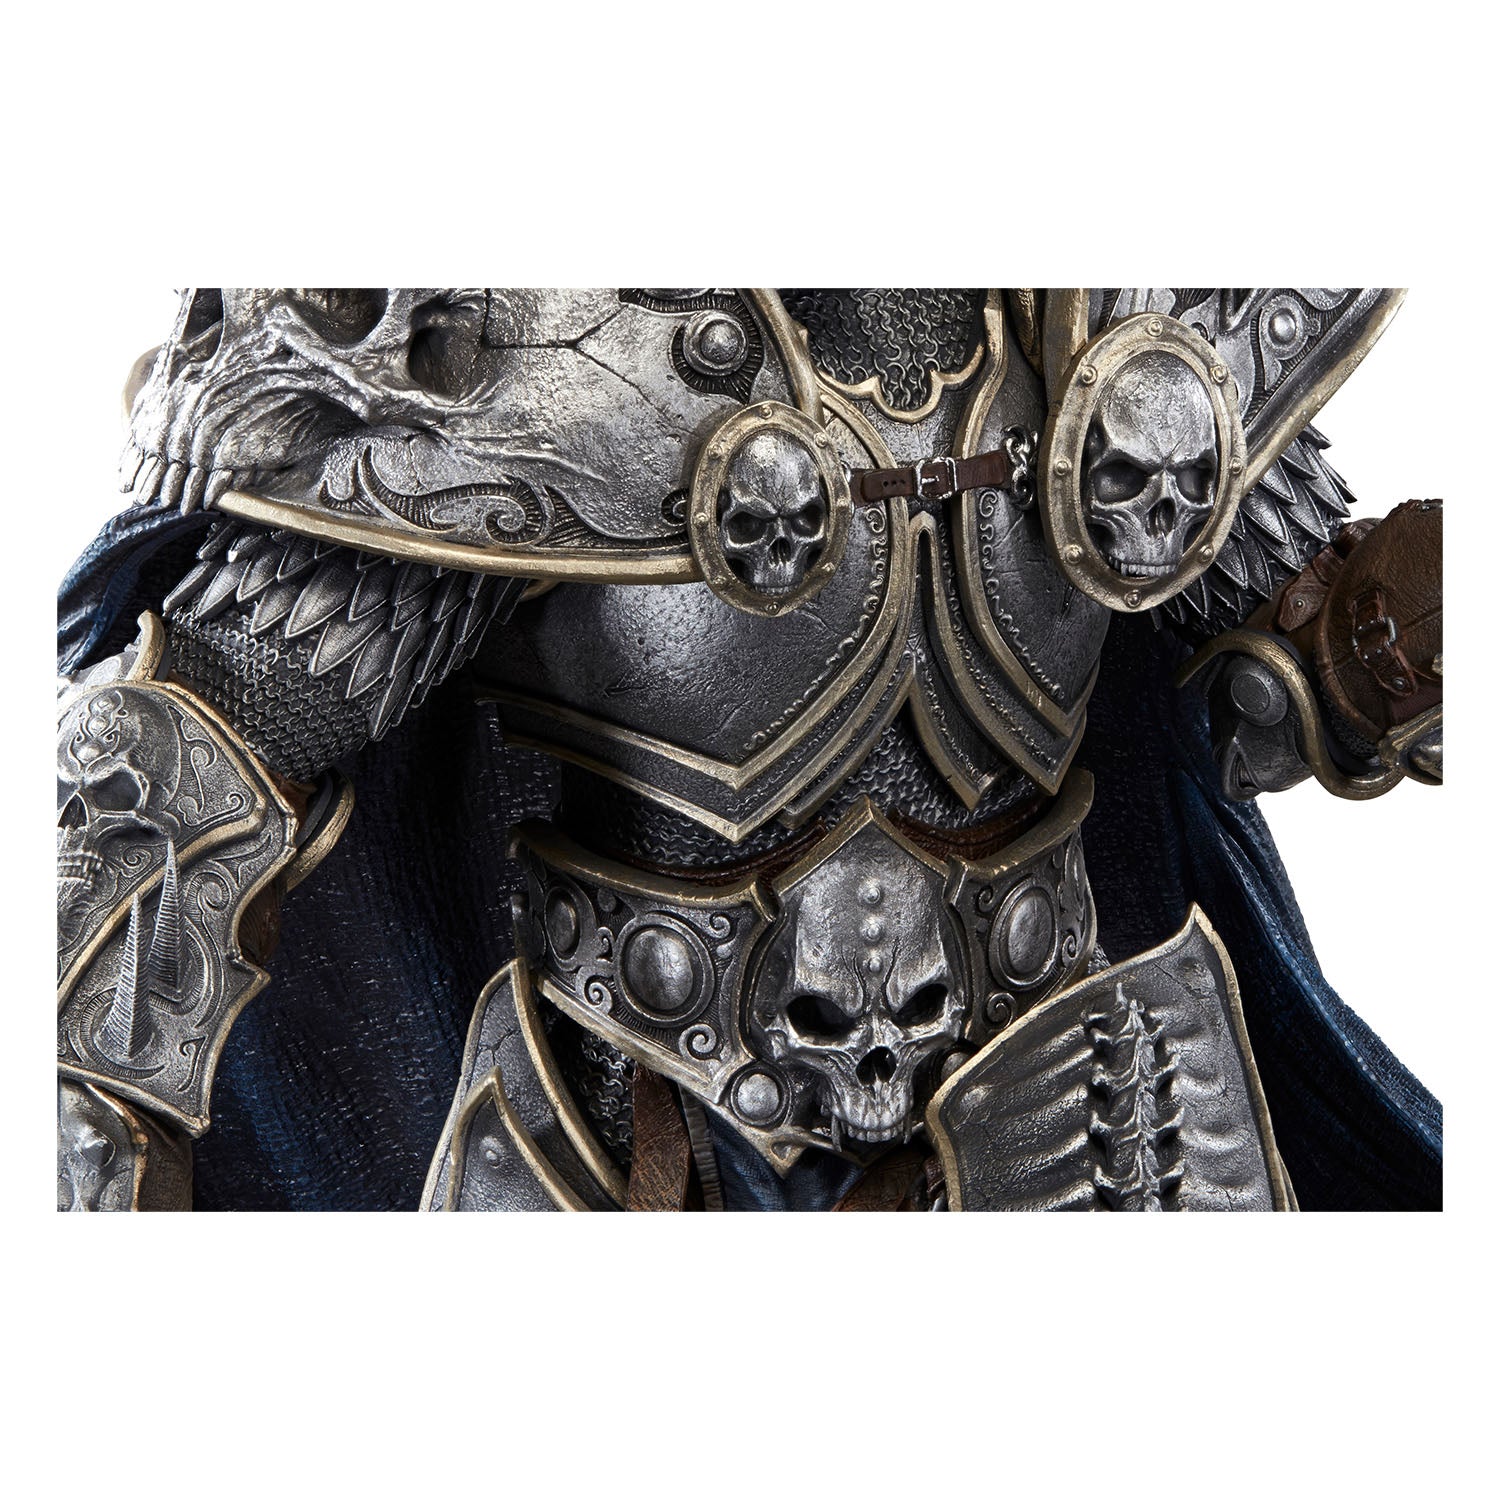 World of Warcraft Lich King Arthas 26" Premium Statue in Grey - Zoom Body View